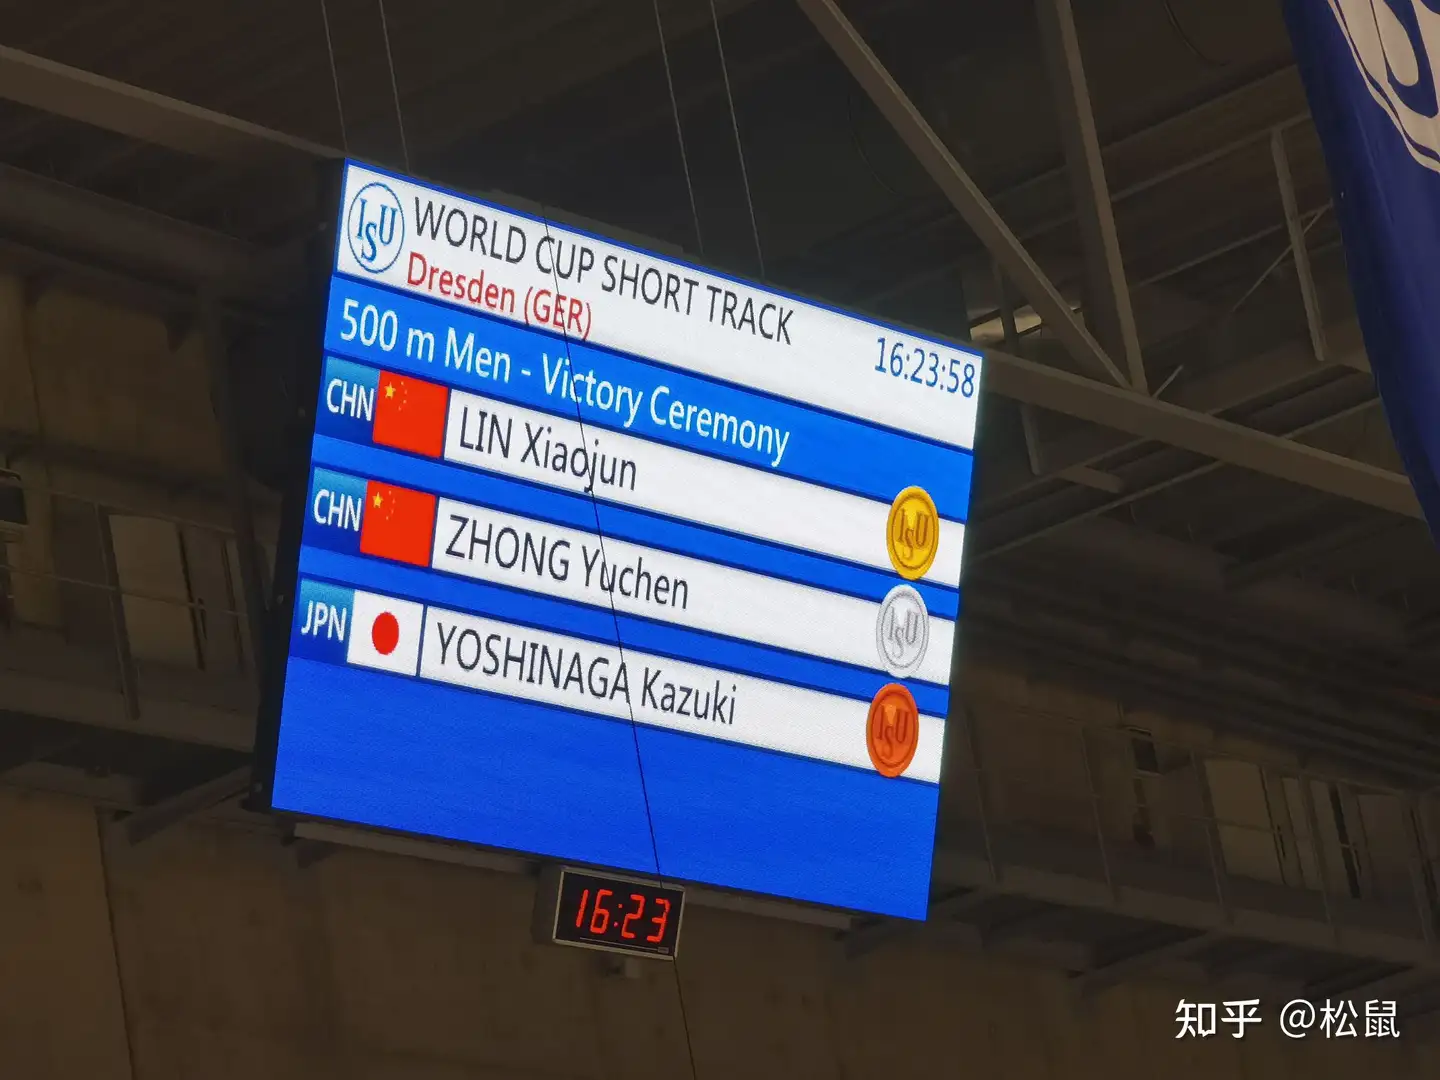 林孝埈夺中国队首金，中国选手包揽 500 米短道速滑冠亚军，如何评价这样的表现？